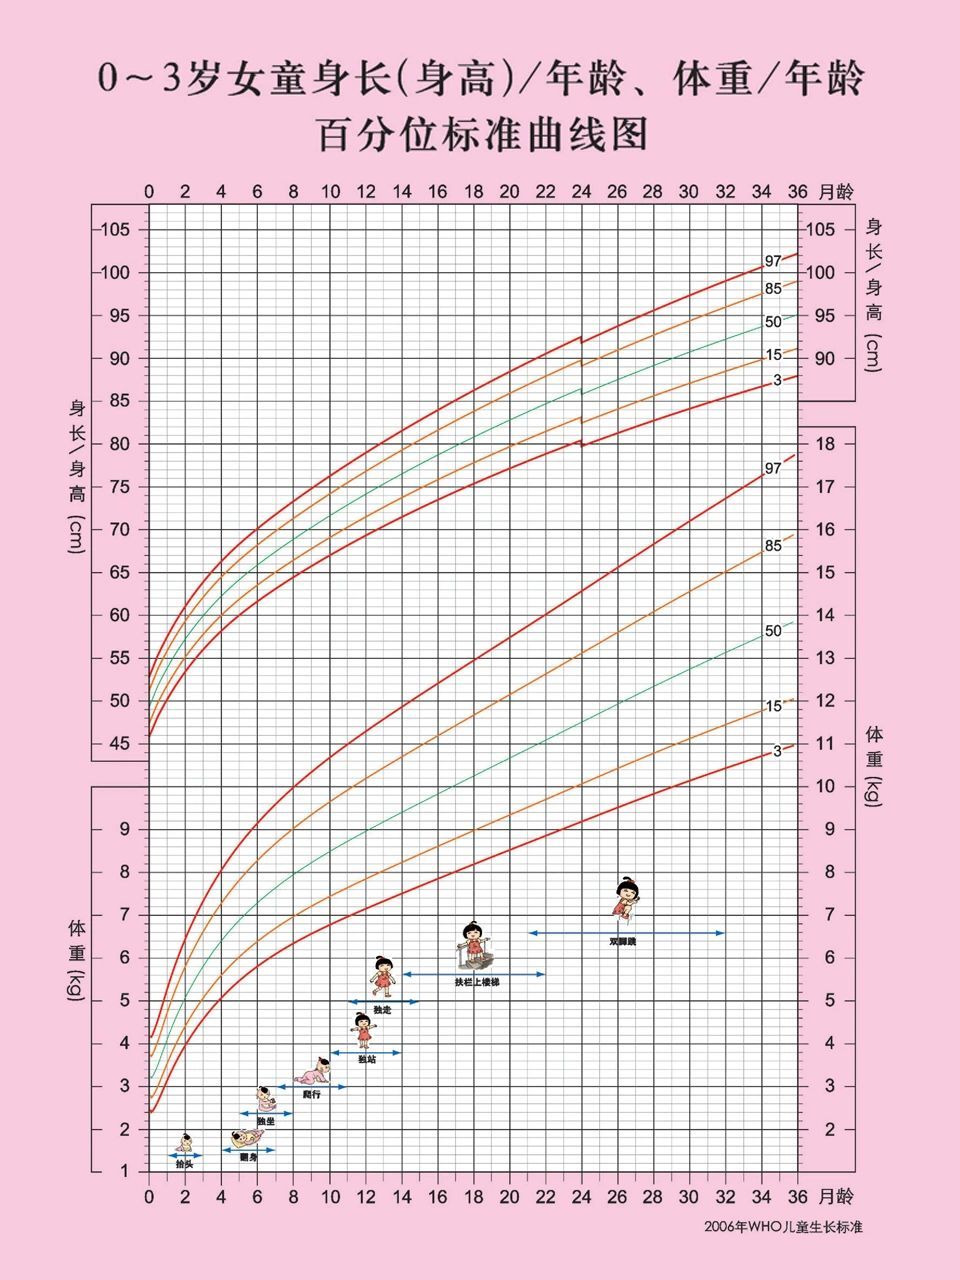 婴儿身高曲线图男孩图片